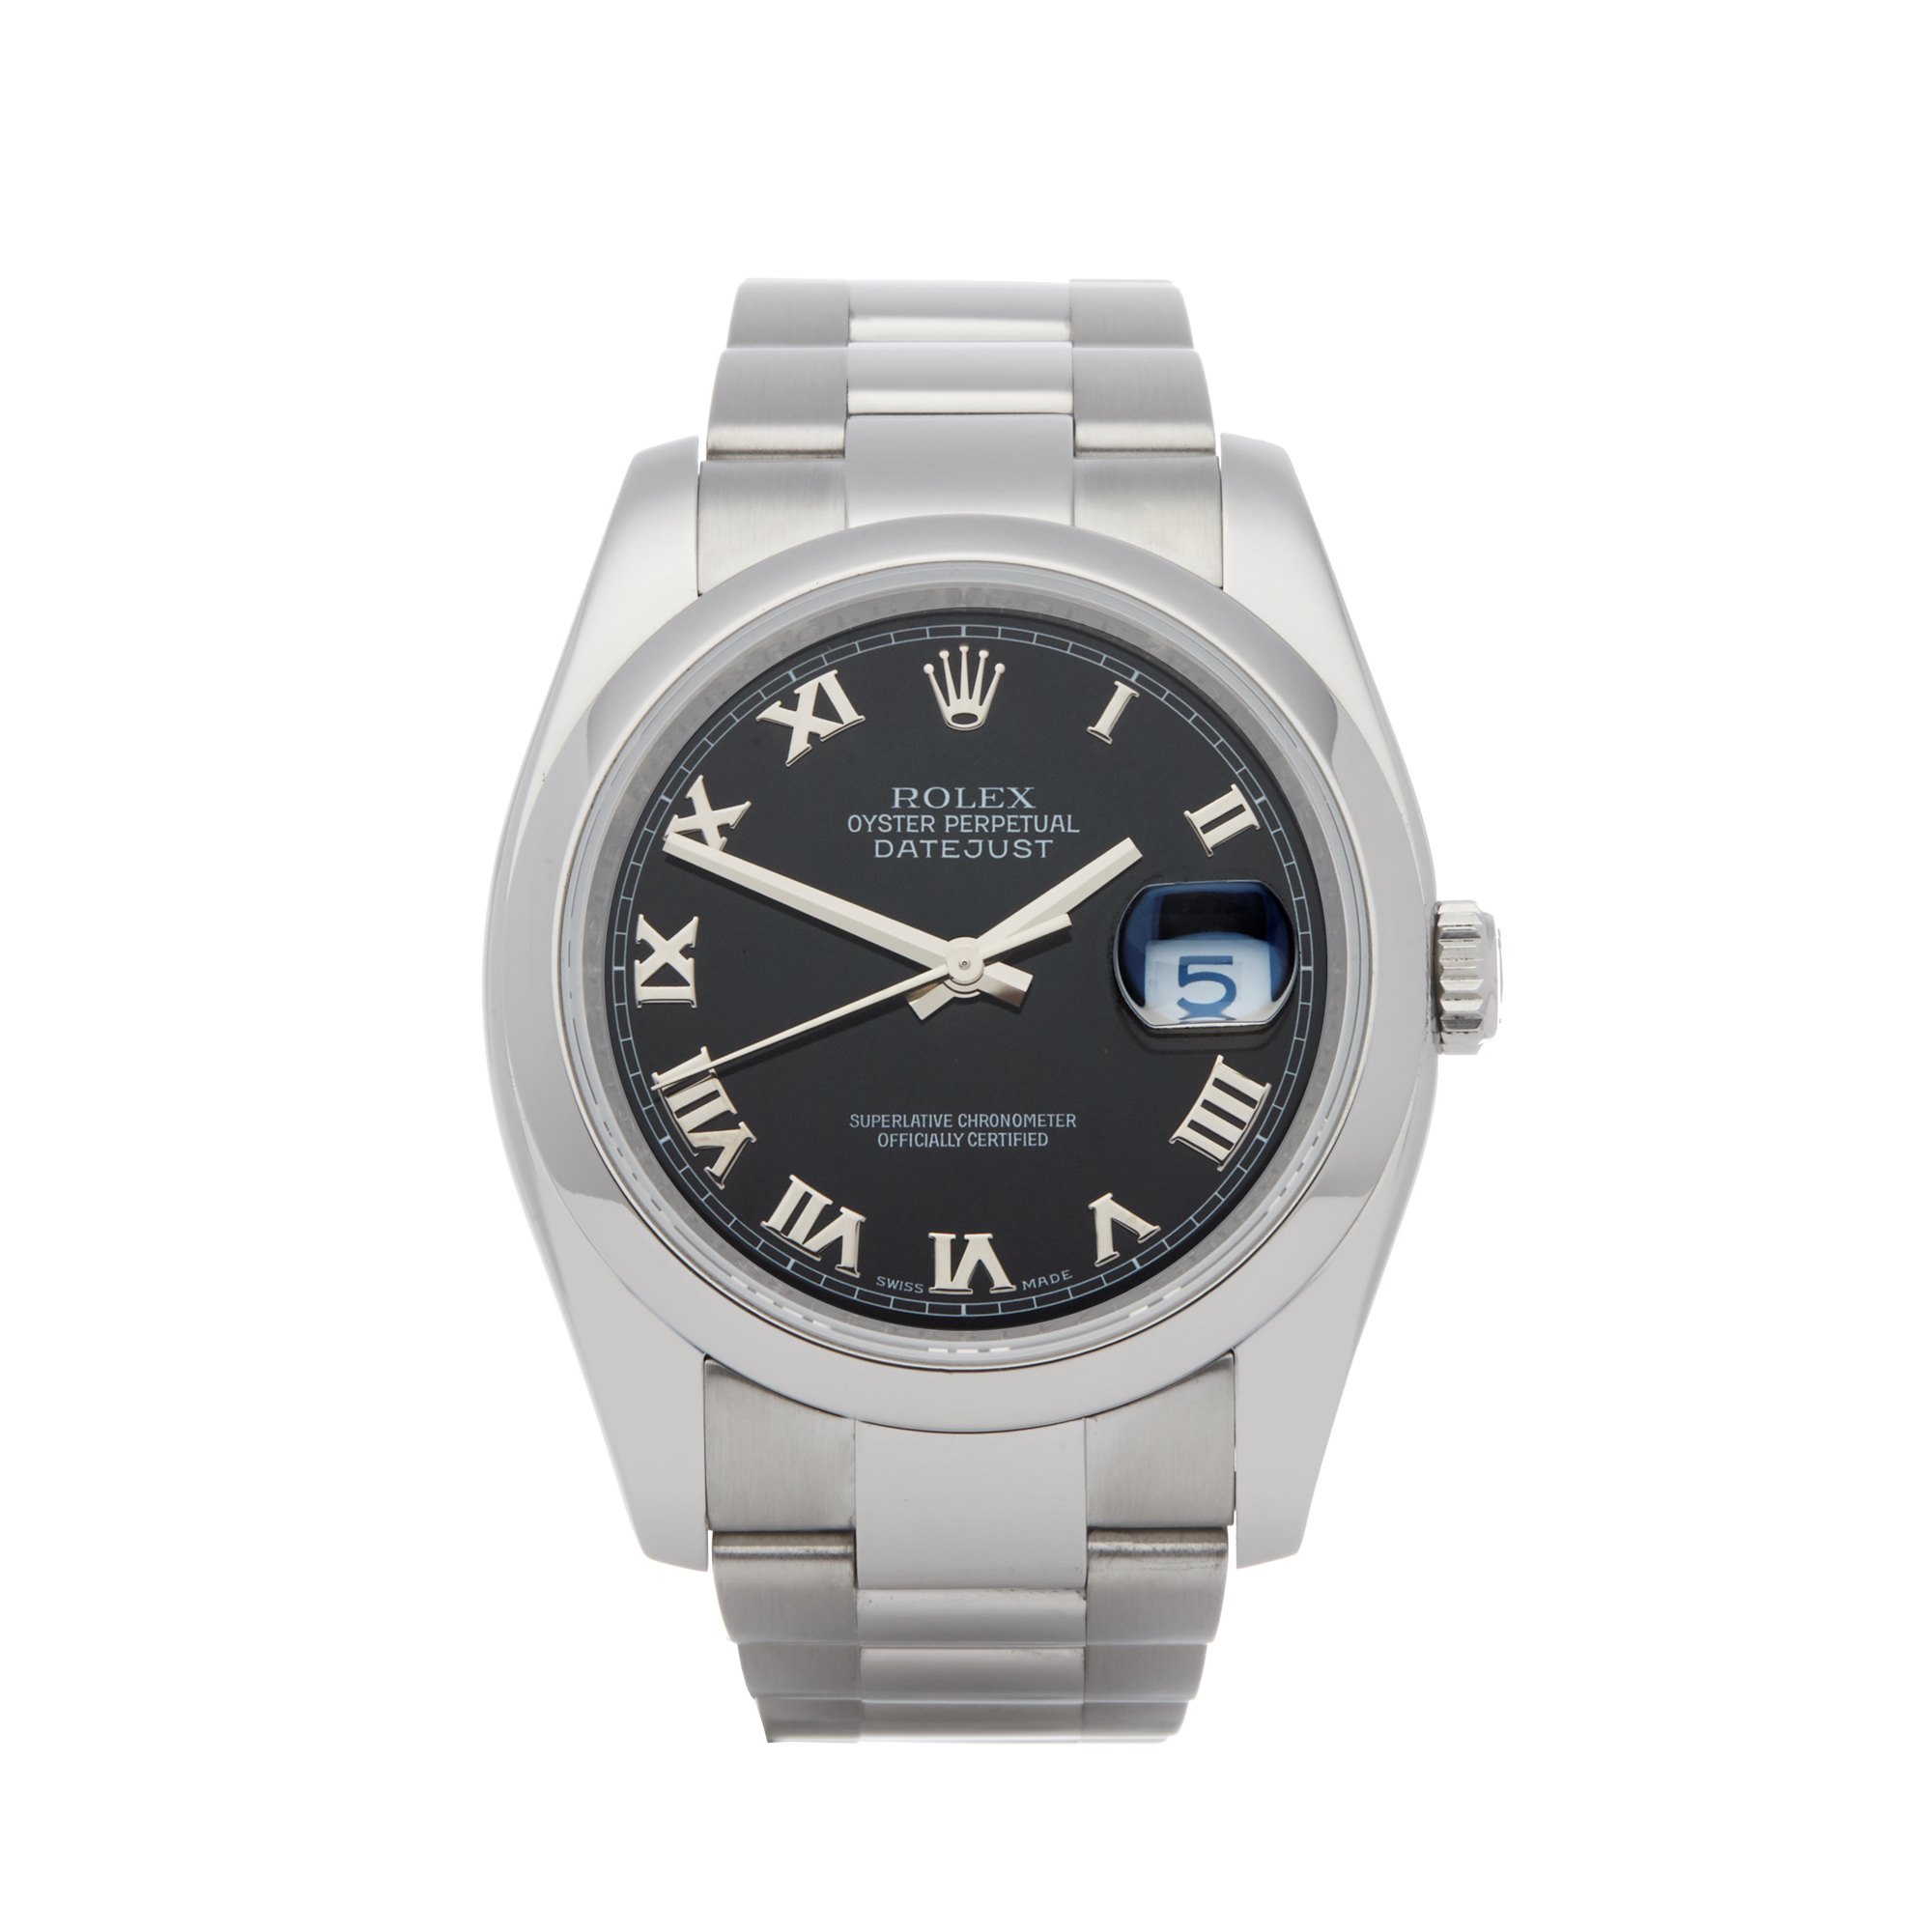 Rolex Datejust 36 Stainless Steel Watch 116200